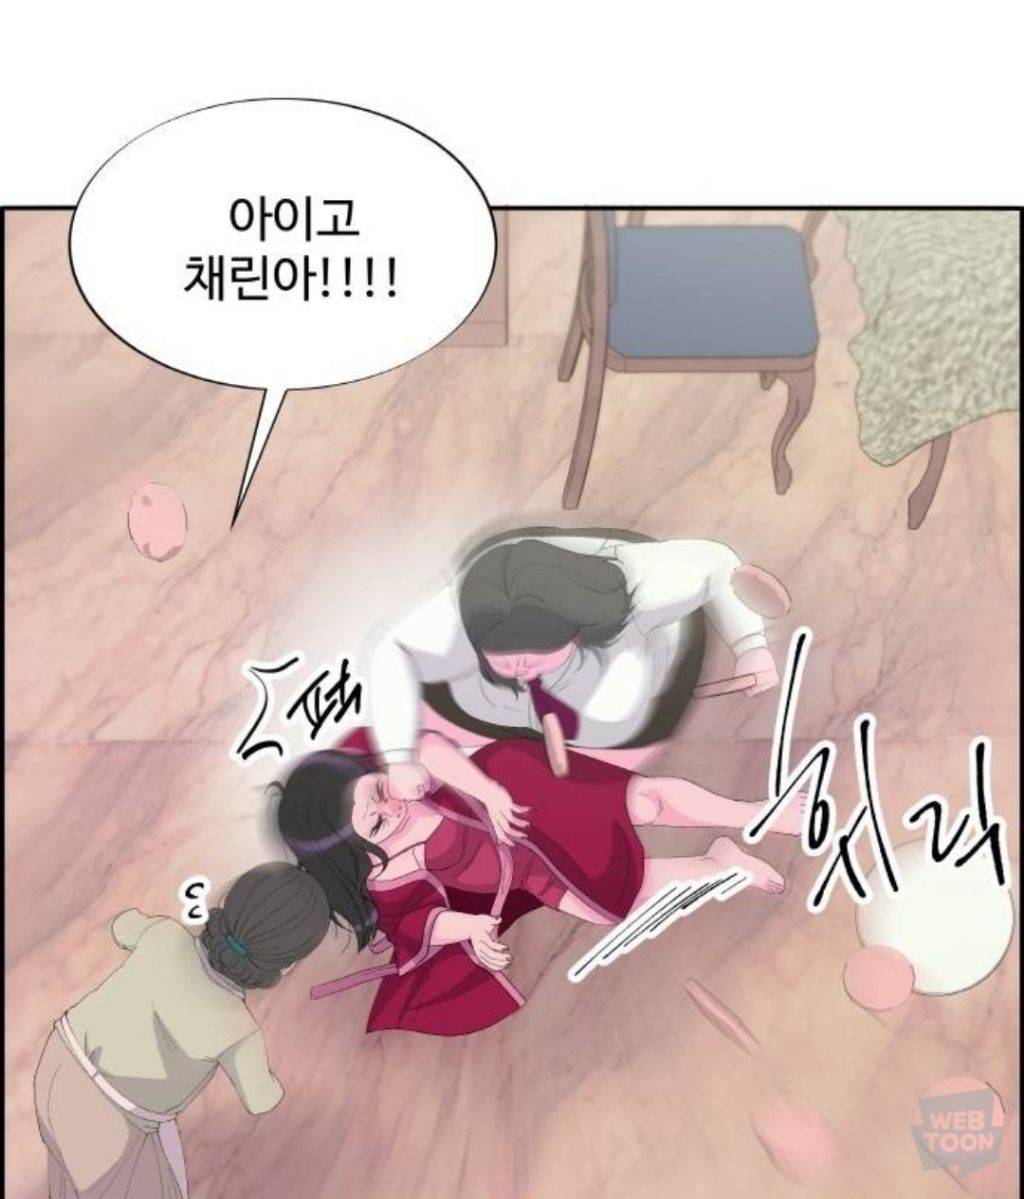 2부 시작한 네이버웹툰 팔이피플 근황 (스포) | 인스티즈